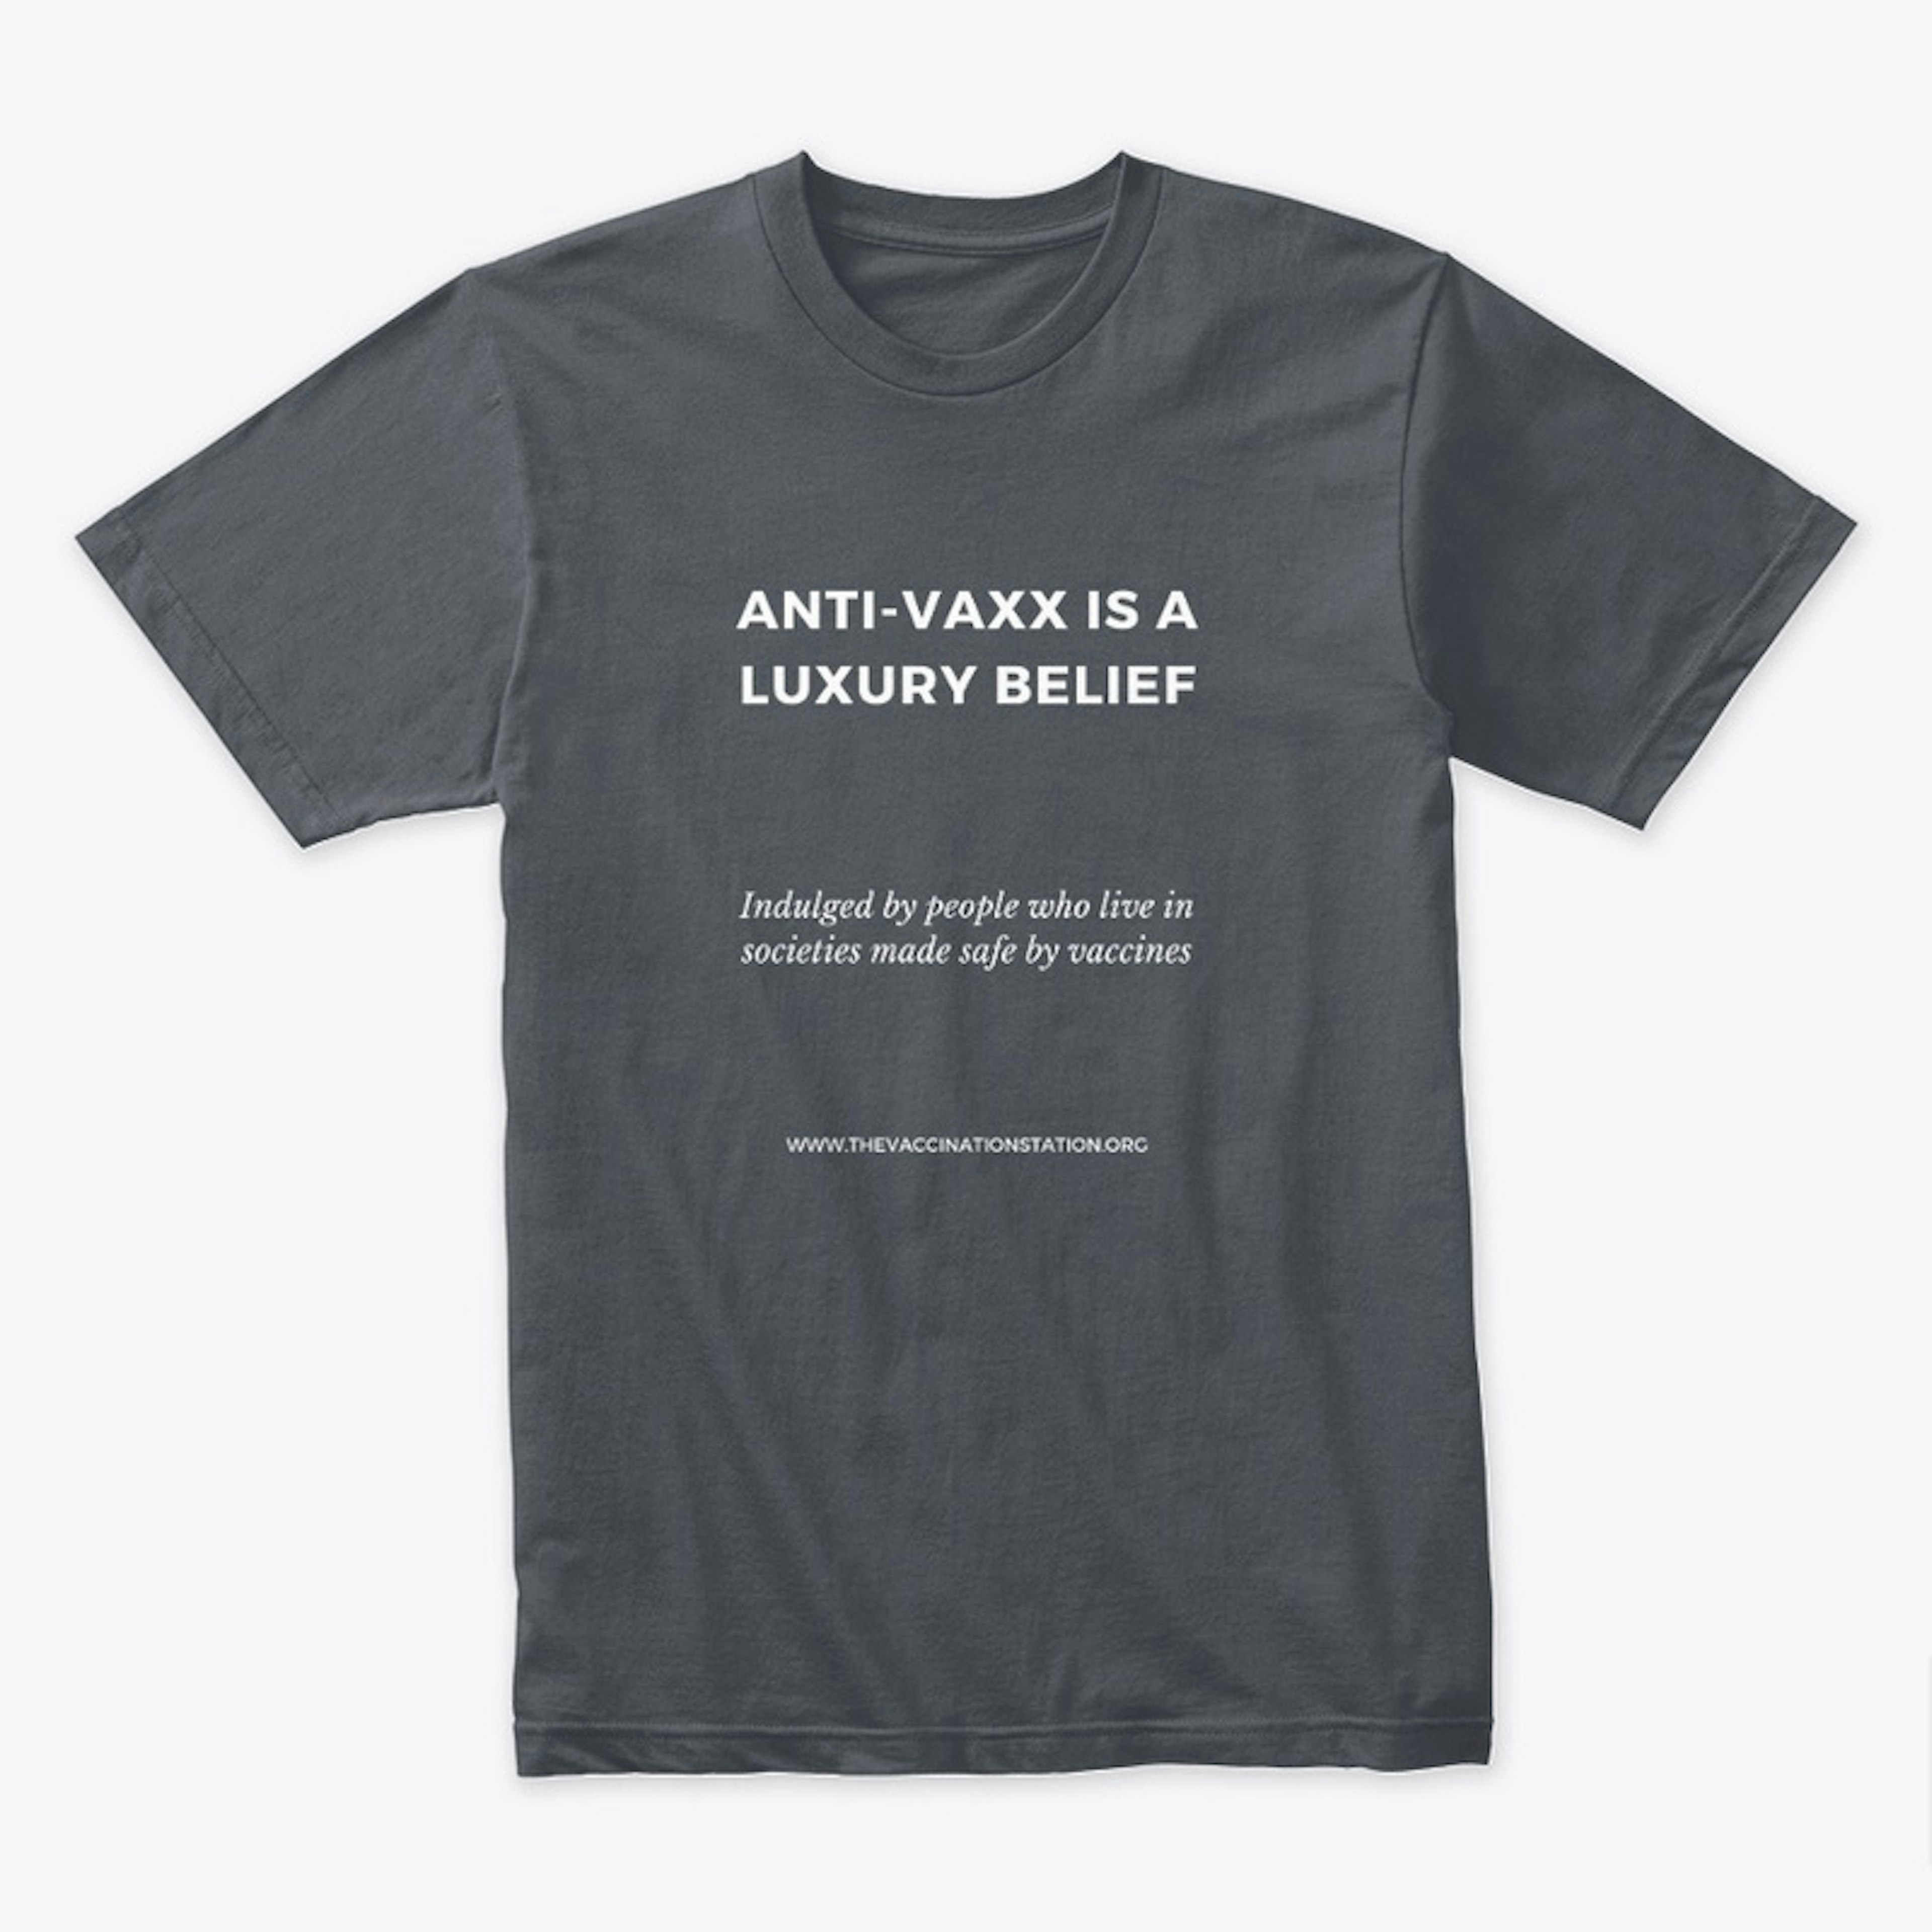 Anti-vaxx is a luxury belief